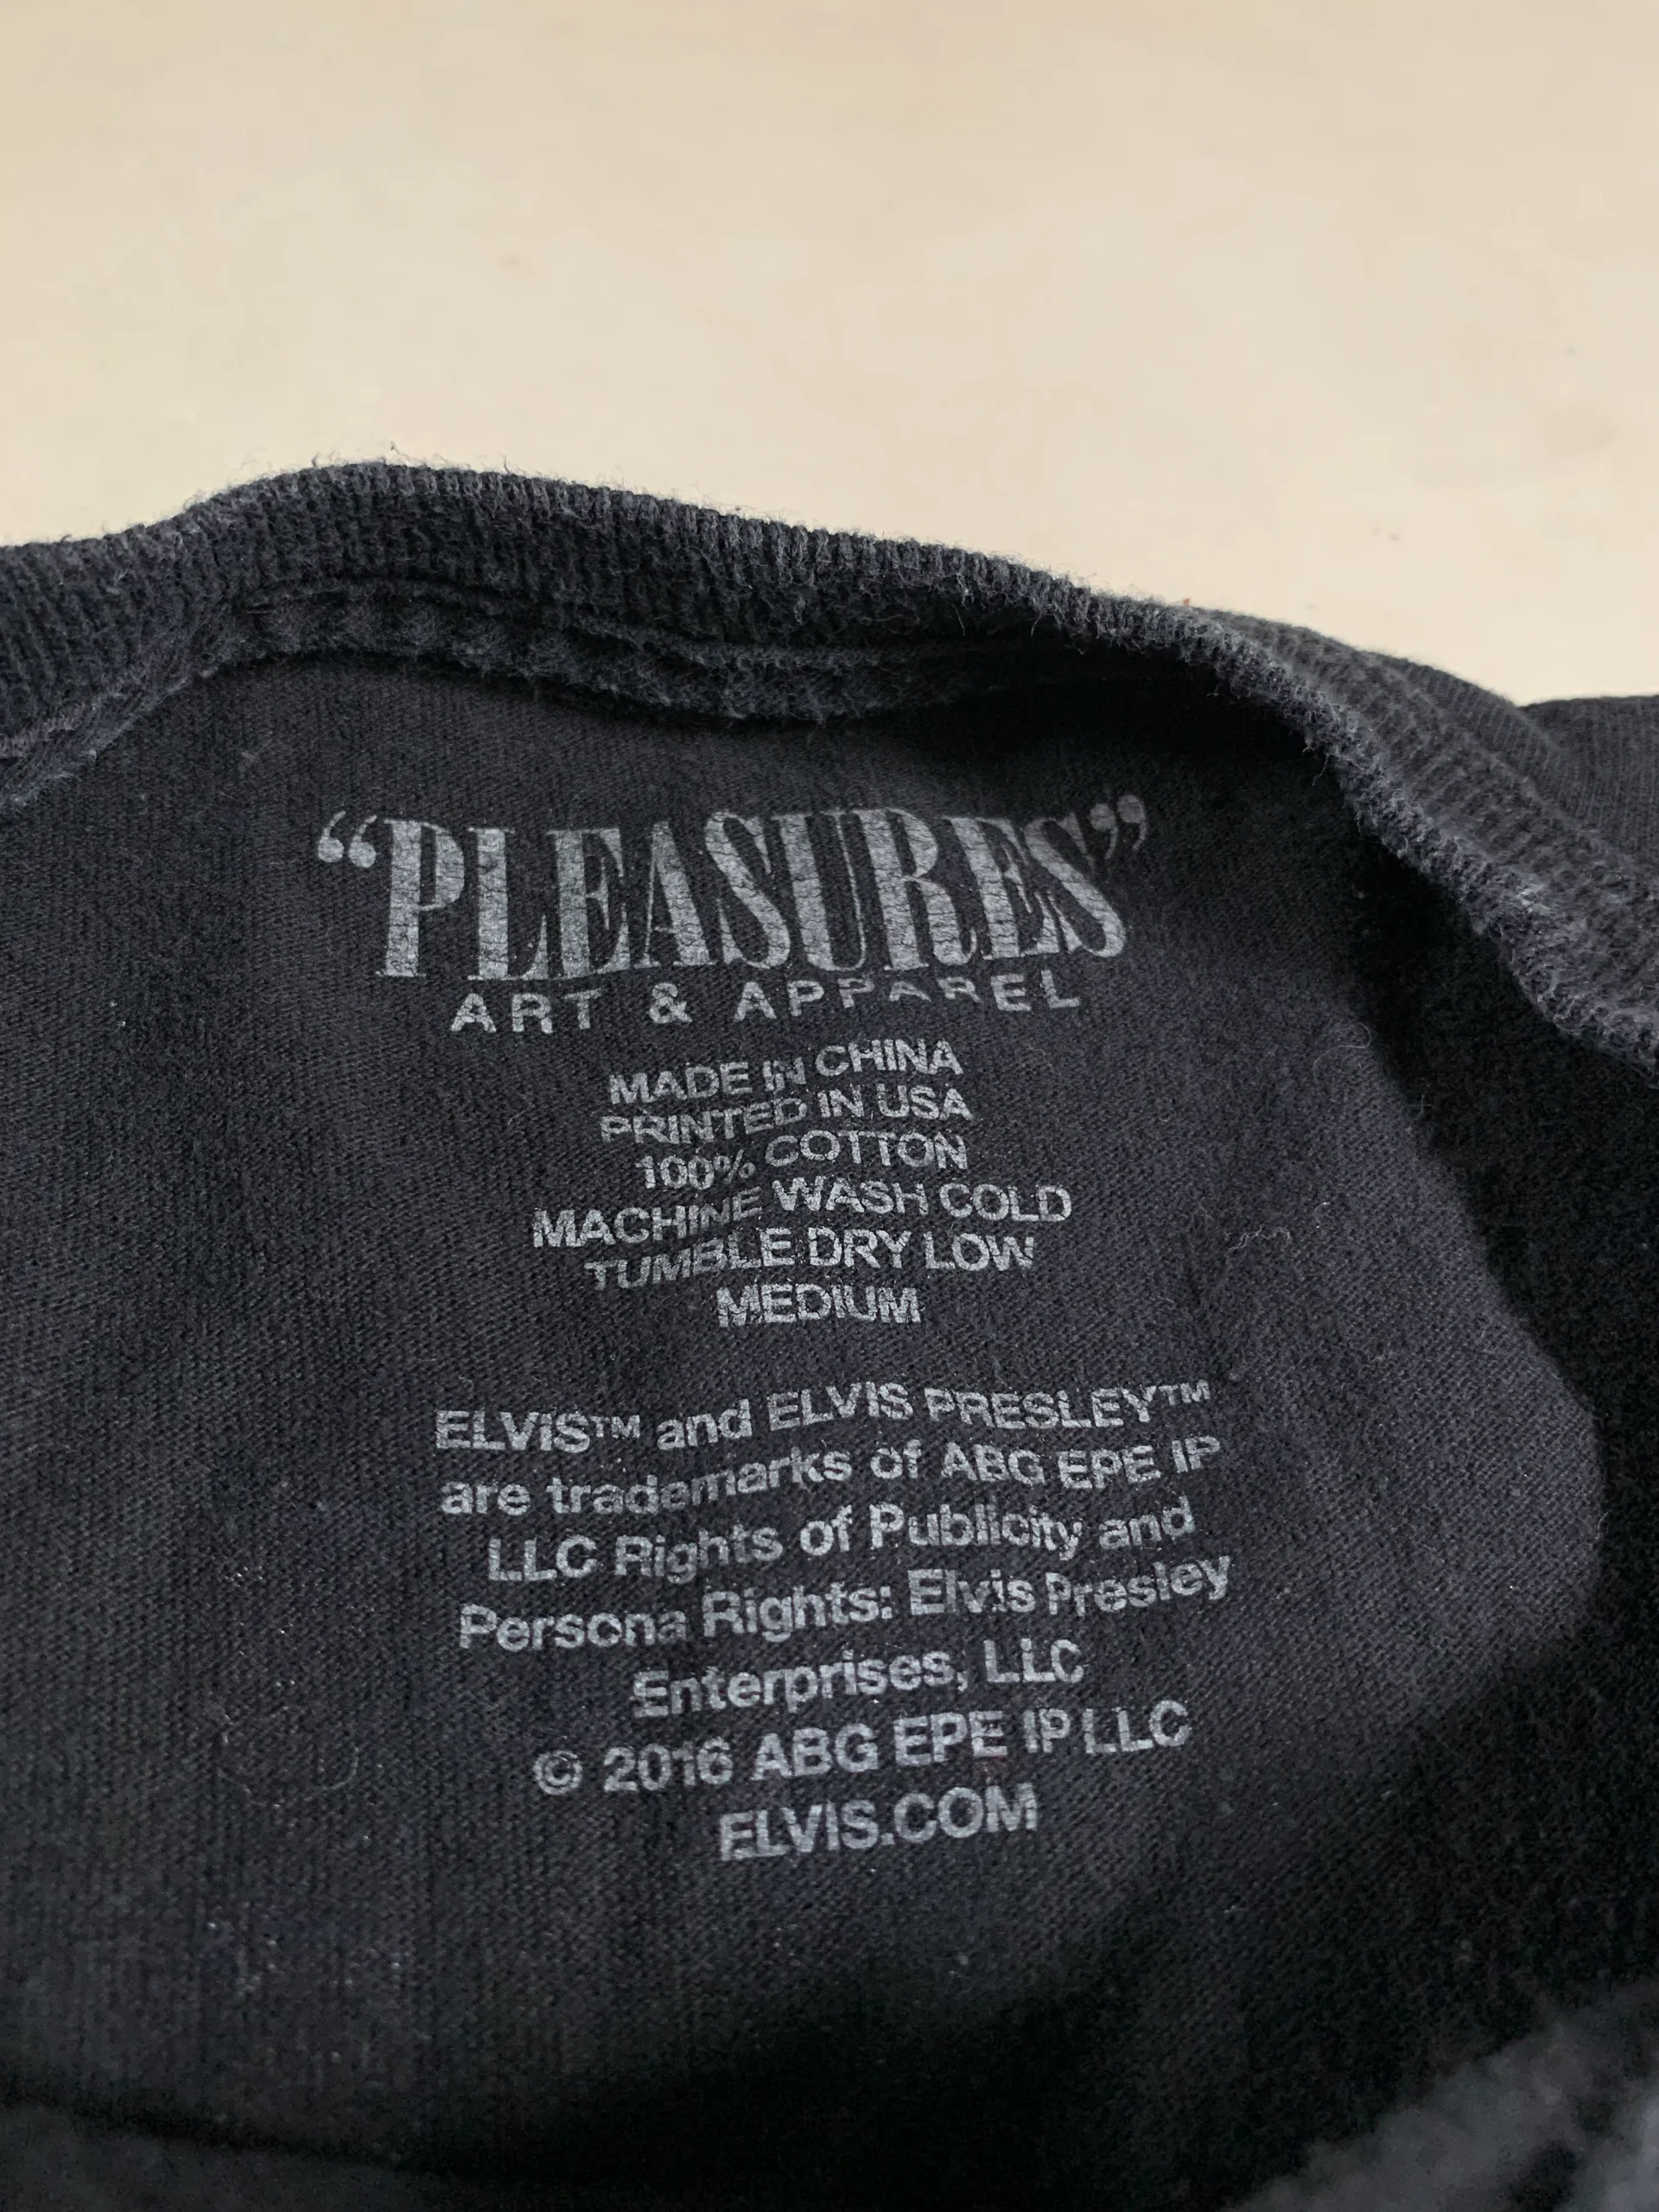 00s エルビスプレスリー PLEASURES Art ＆ Apparel Tシャツ メンズ 黒 ブラック 古着 コットン Mサイズ 【オランダから直送】